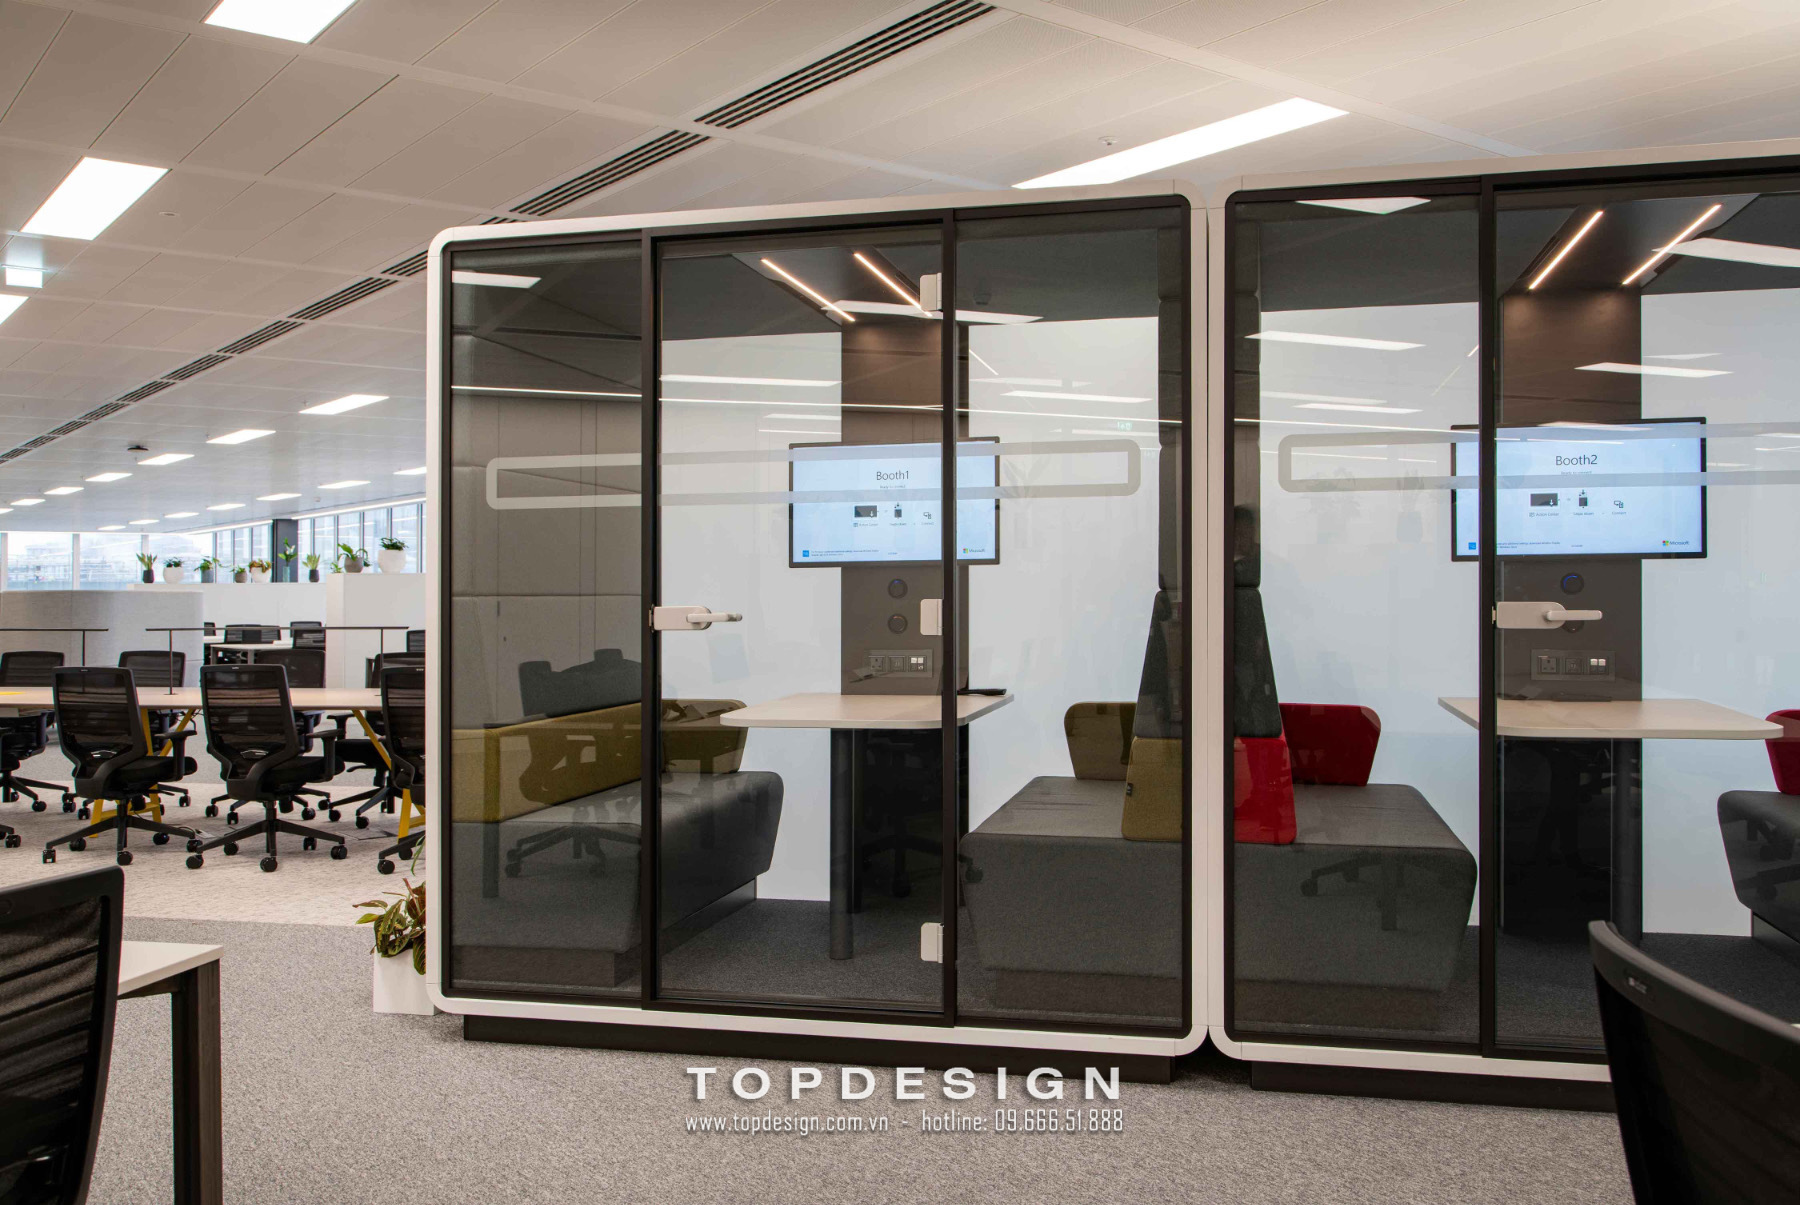 14.Thiết kế nội thất văn phòng công ty công nghệ kín đáo, riêng tư_TOPDESIGN